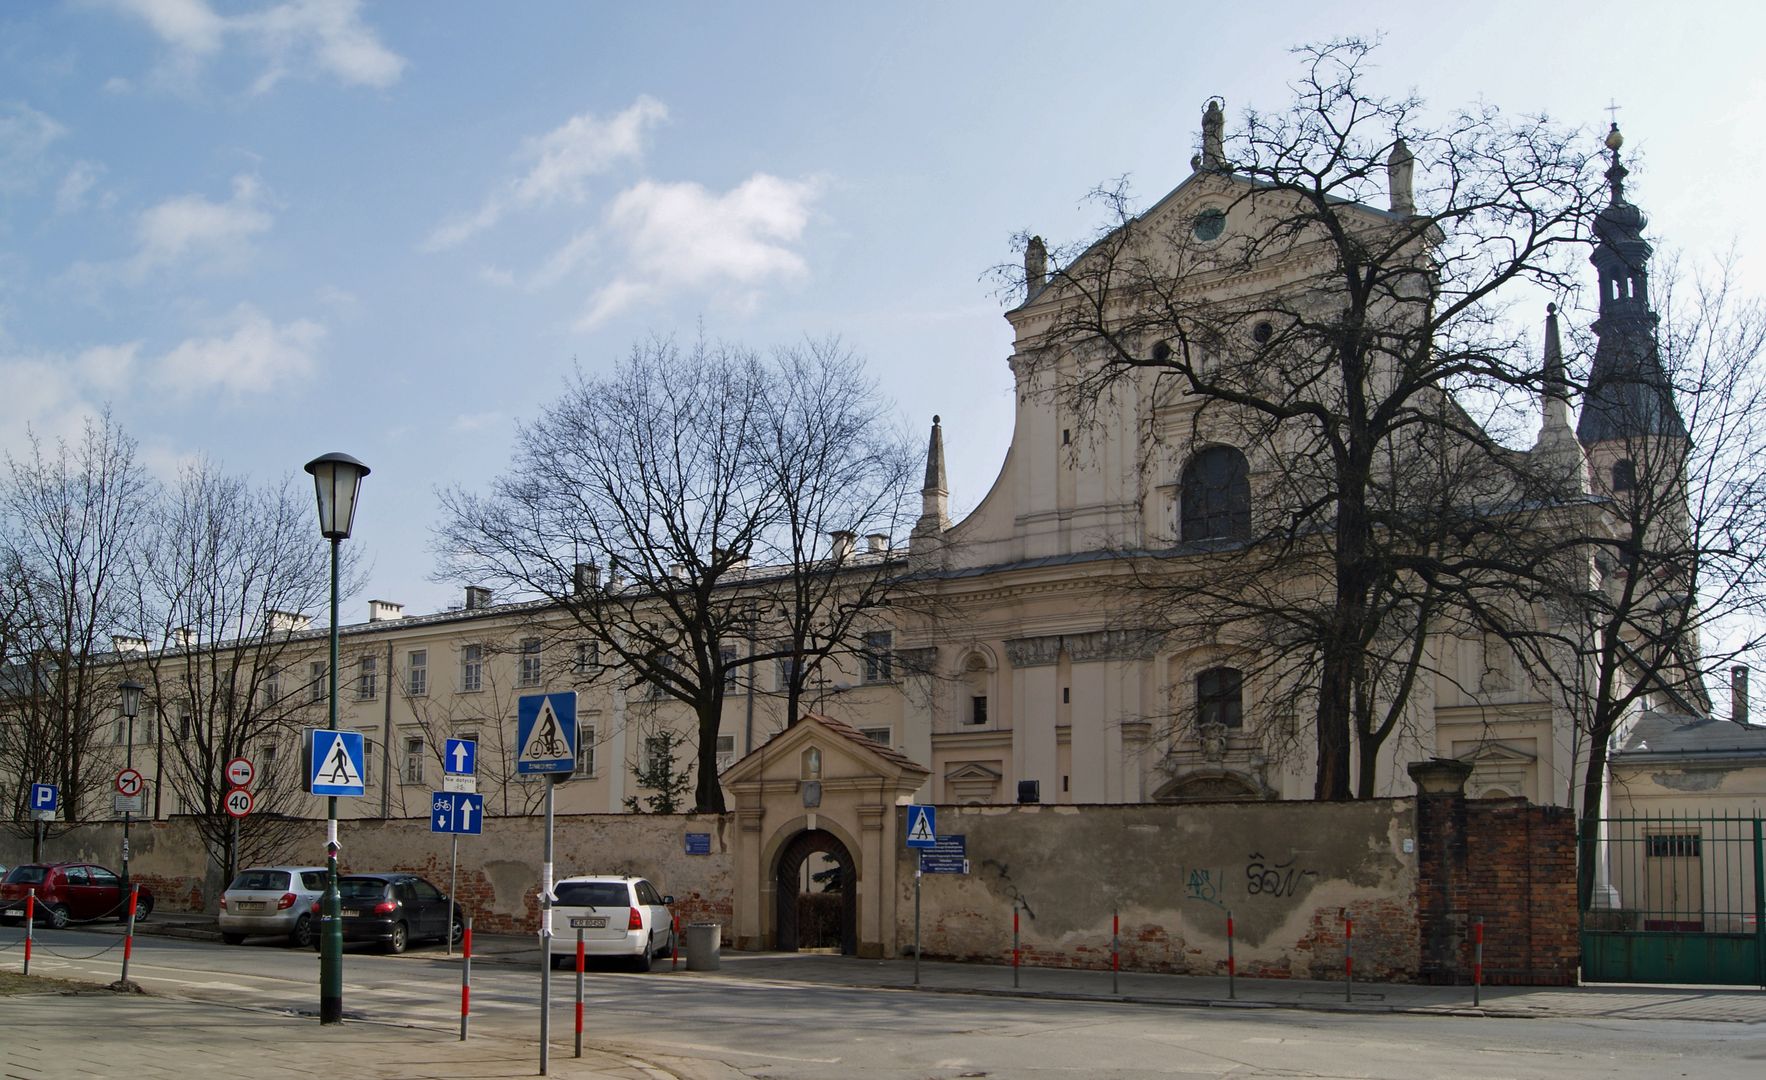 Kraków kupił działki razem z kościołem. "Kto zapłaci za prąd" dopytuje radny